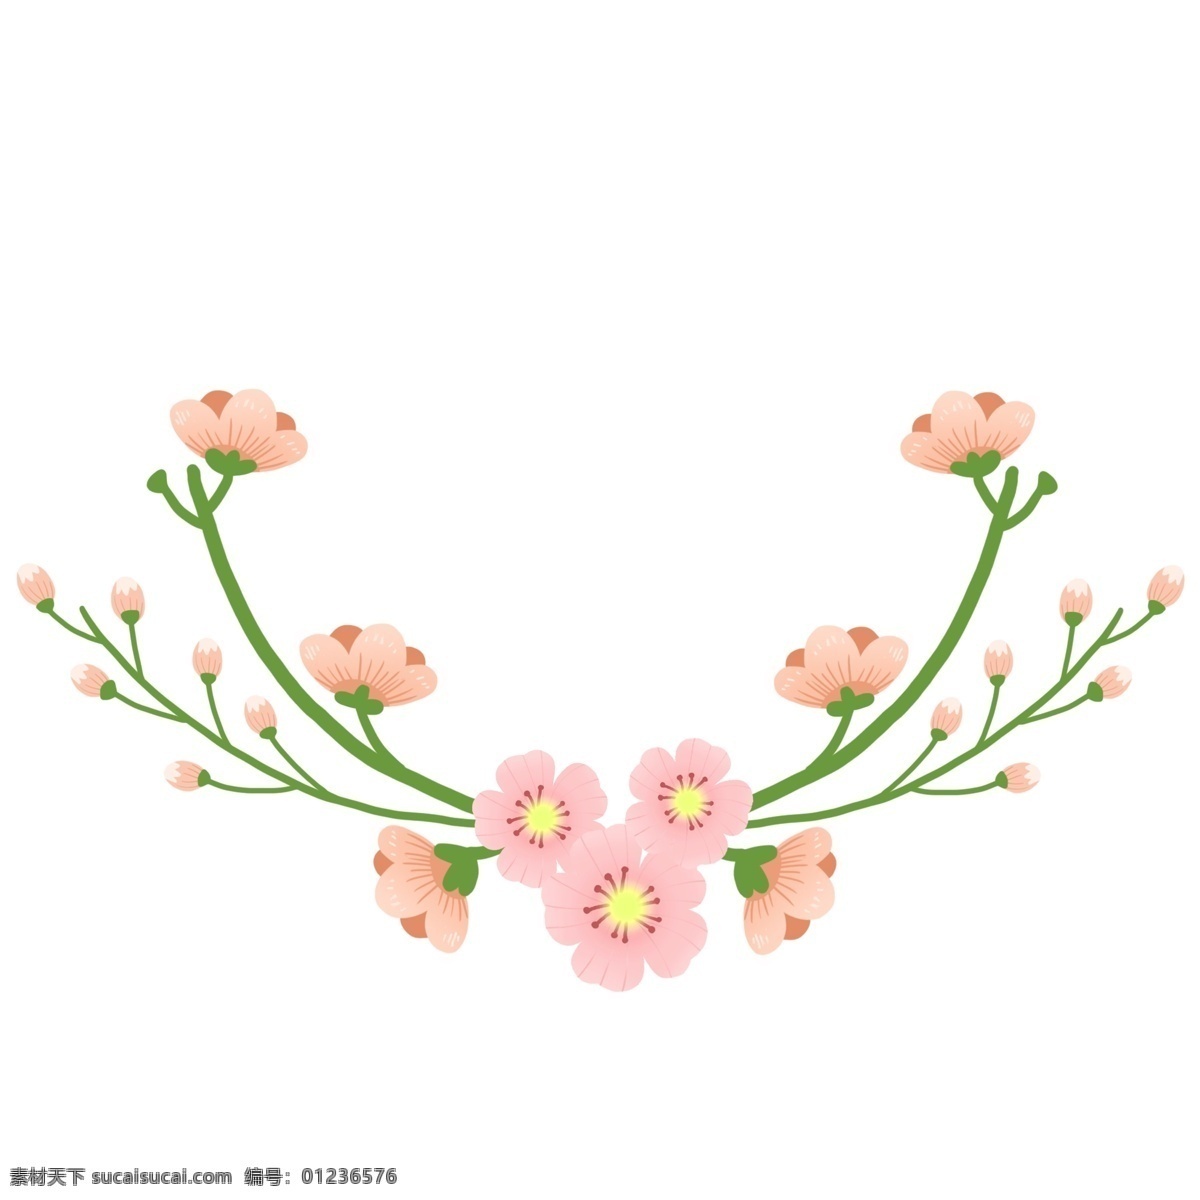 樱花 装饰 花环 免 抠 花朵 花瓣 树枝 树叶 心形 爱心 原创手绘 唯美 粉红色 简单 卡通樱花 粉红色的花瓣